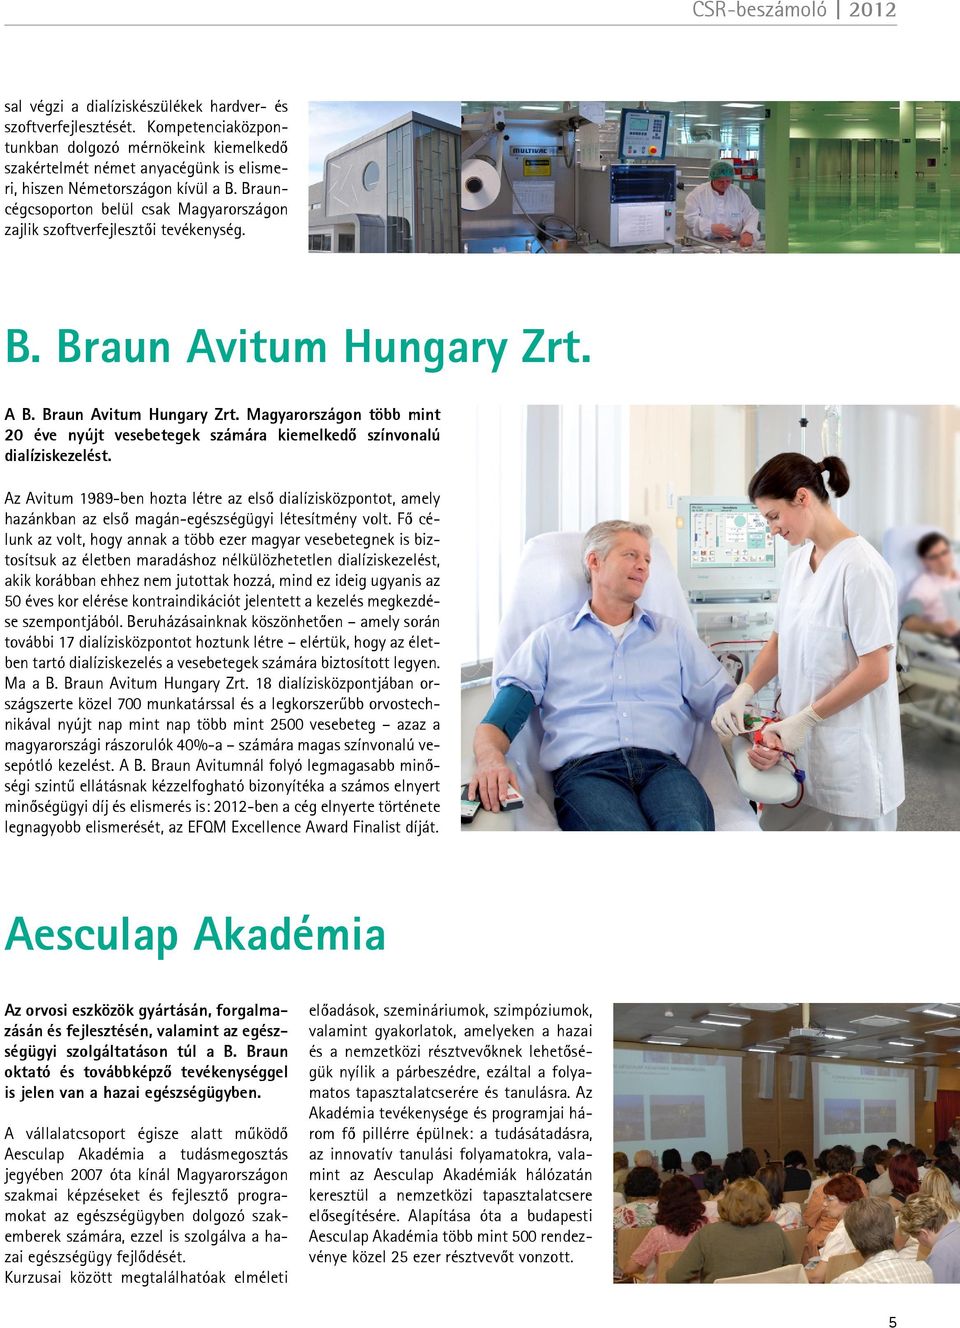 Brauncégcsoporton belül csak Magyarországon zajlik szoftverfejlesztői tevékenység. B. Braun Avitum Hungary Zrt.